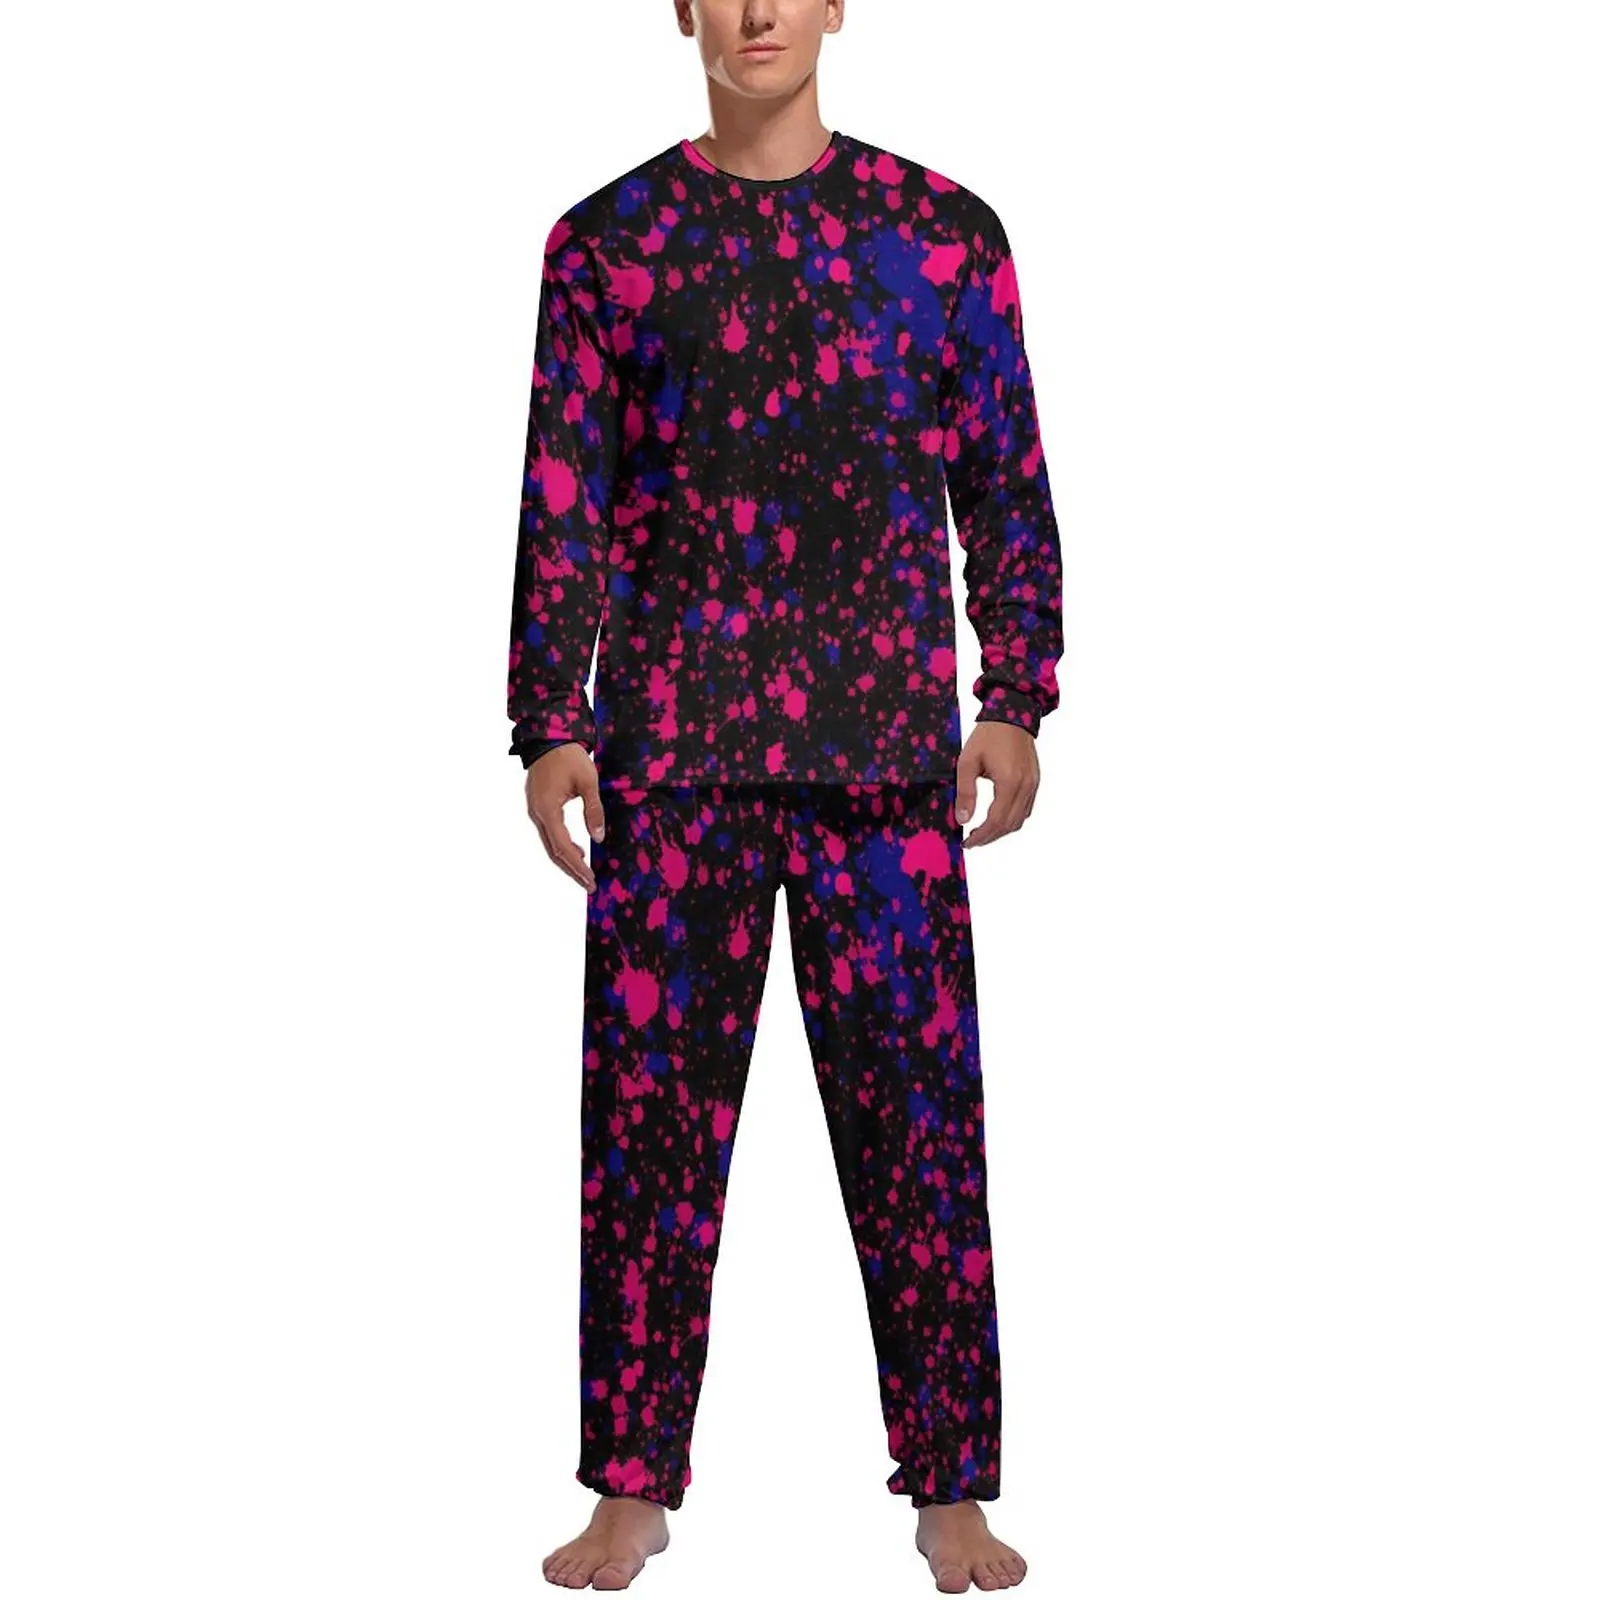 

Пижама Мужская теплая с длинным рукавом, фиолетовый и розовый пижамный комплект с рисунком брызг, 2 предмета, Повседневная Весенняя Дизайнерская одежда для сна, подарок на день рождения